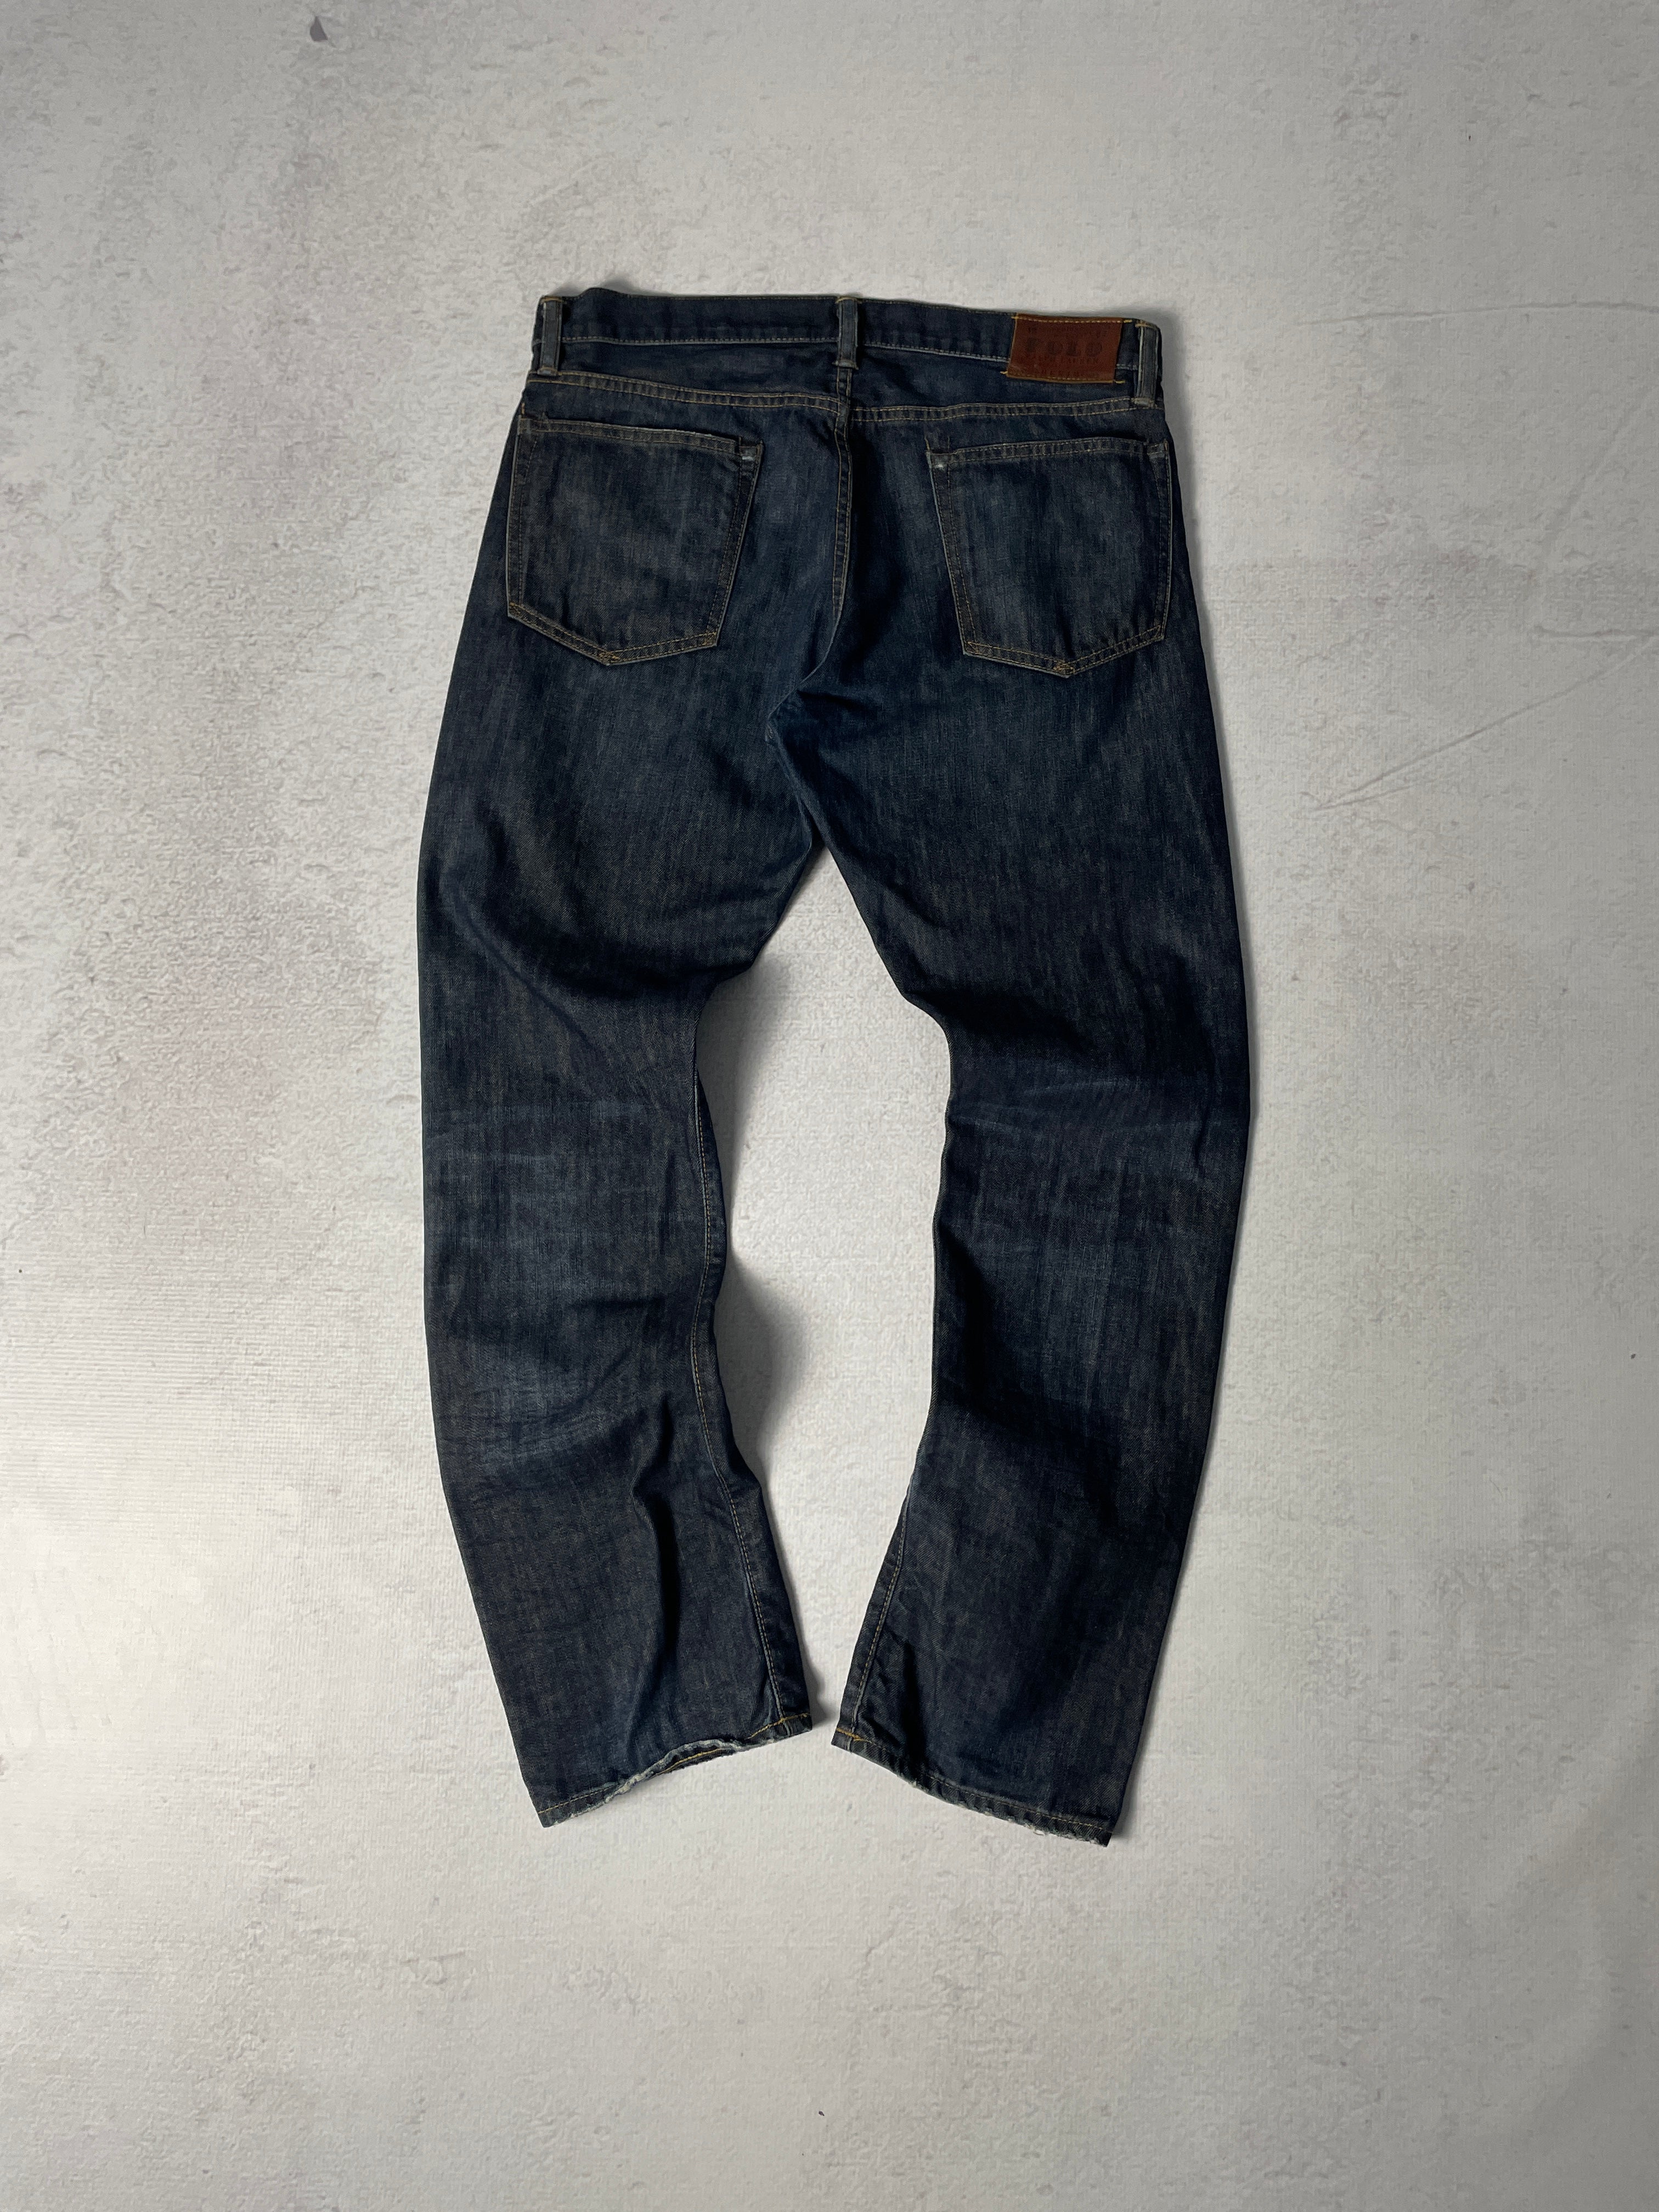 Vintage Polo Ralph Lauren Jeans - Men's 34 x 32